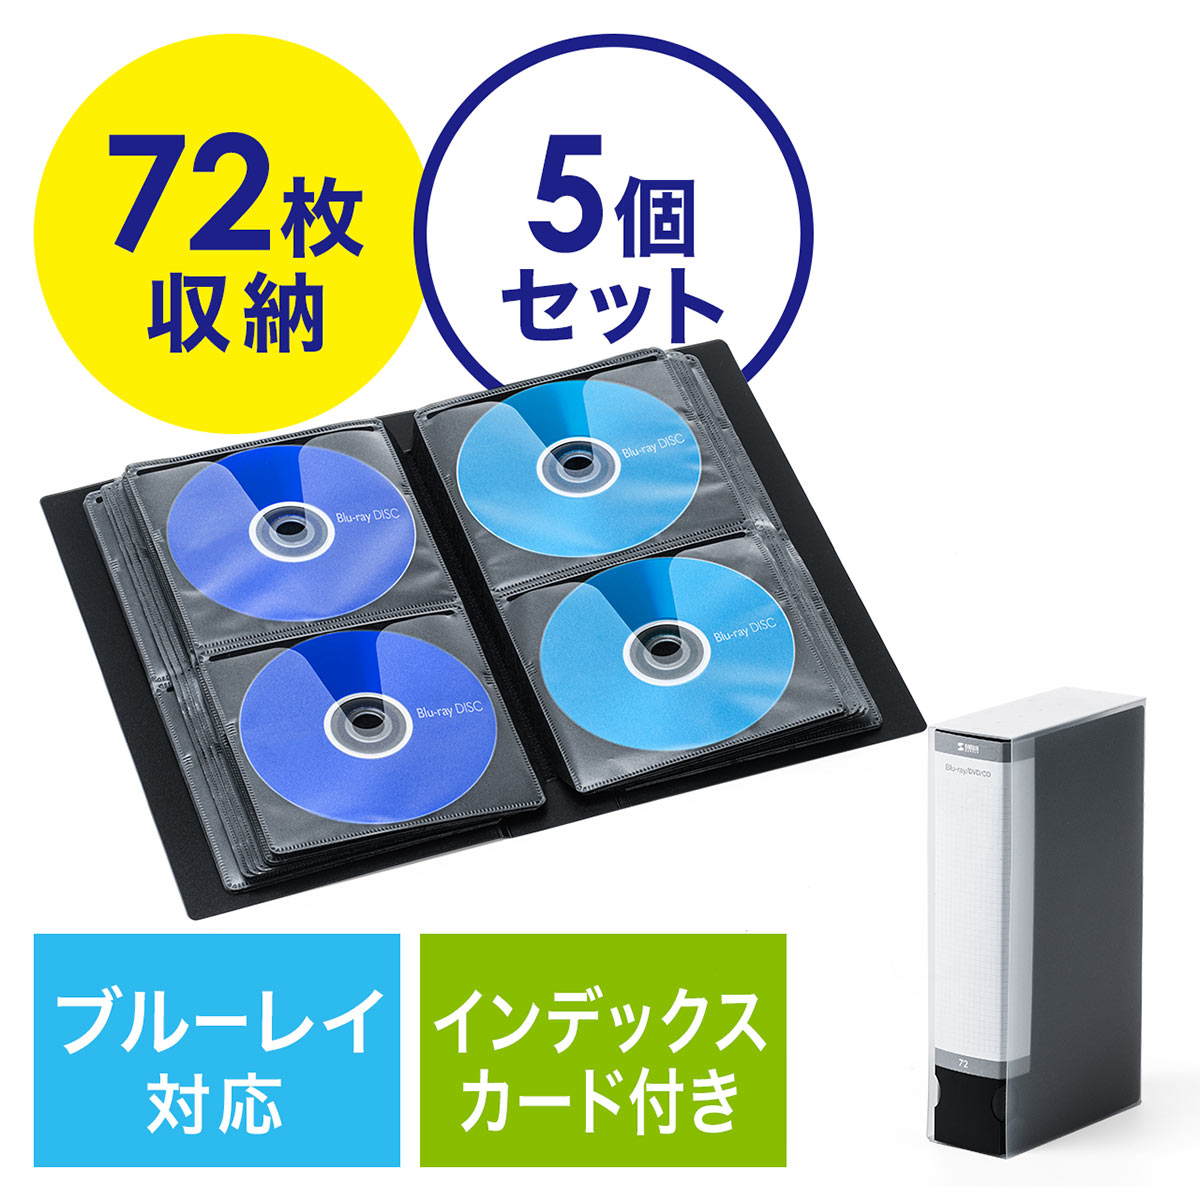 匿名 ブルーレイ 新品ケース Blu-ray 1個 2枚収納 空ケース② - 通販